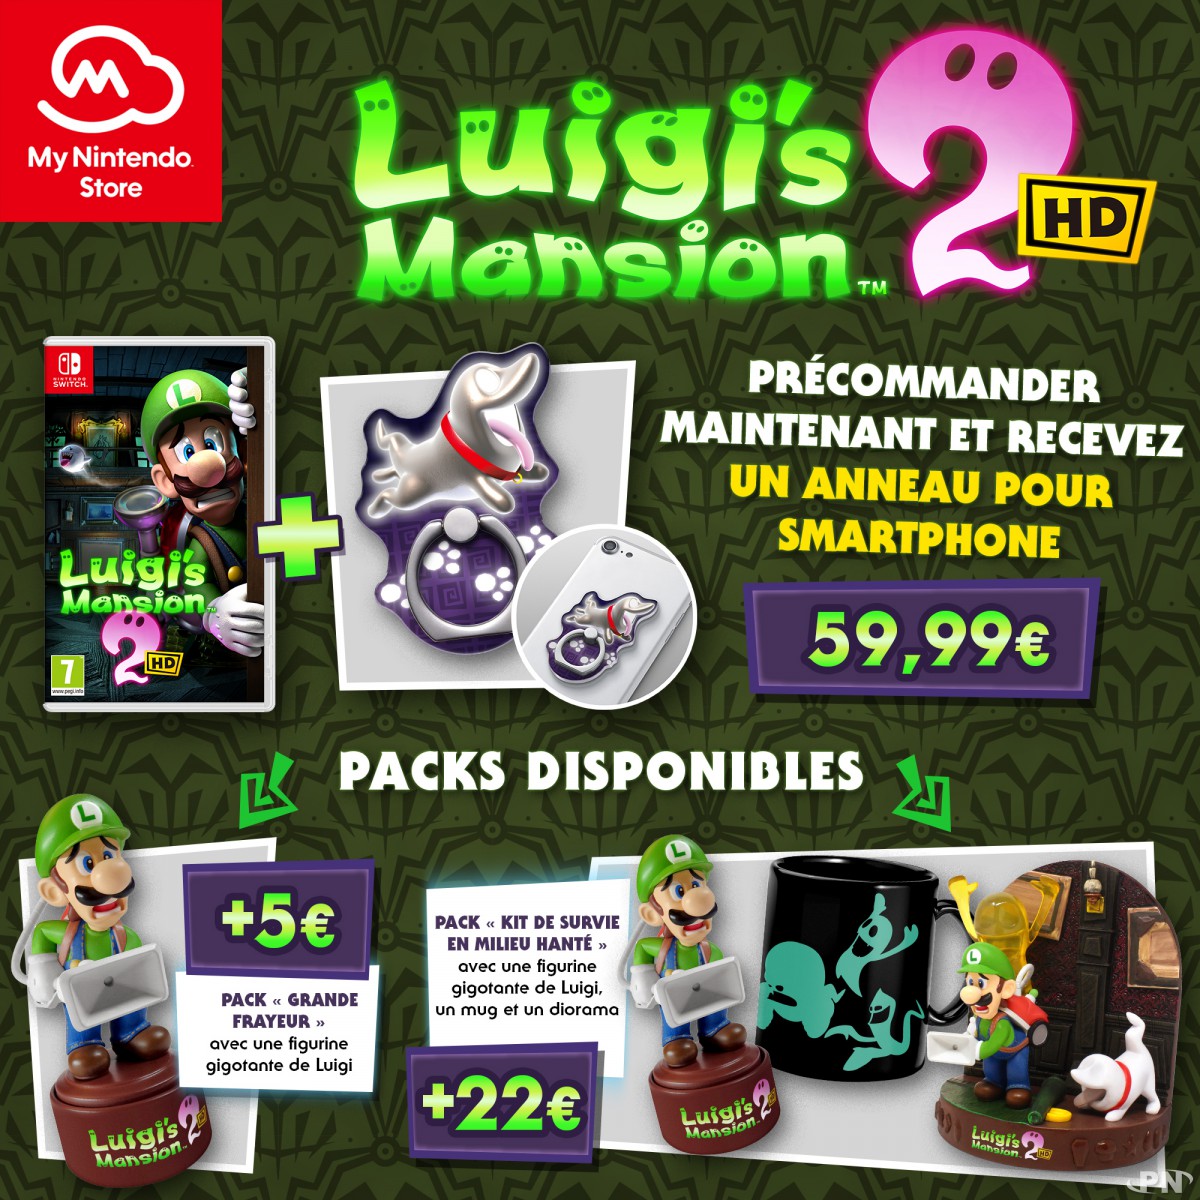 Nintendo France détaille deux offres pour accompagner la sortie de Luigi's Mansion 2 HD sur Nintendo Switch contre 5 ou 22€ de plus